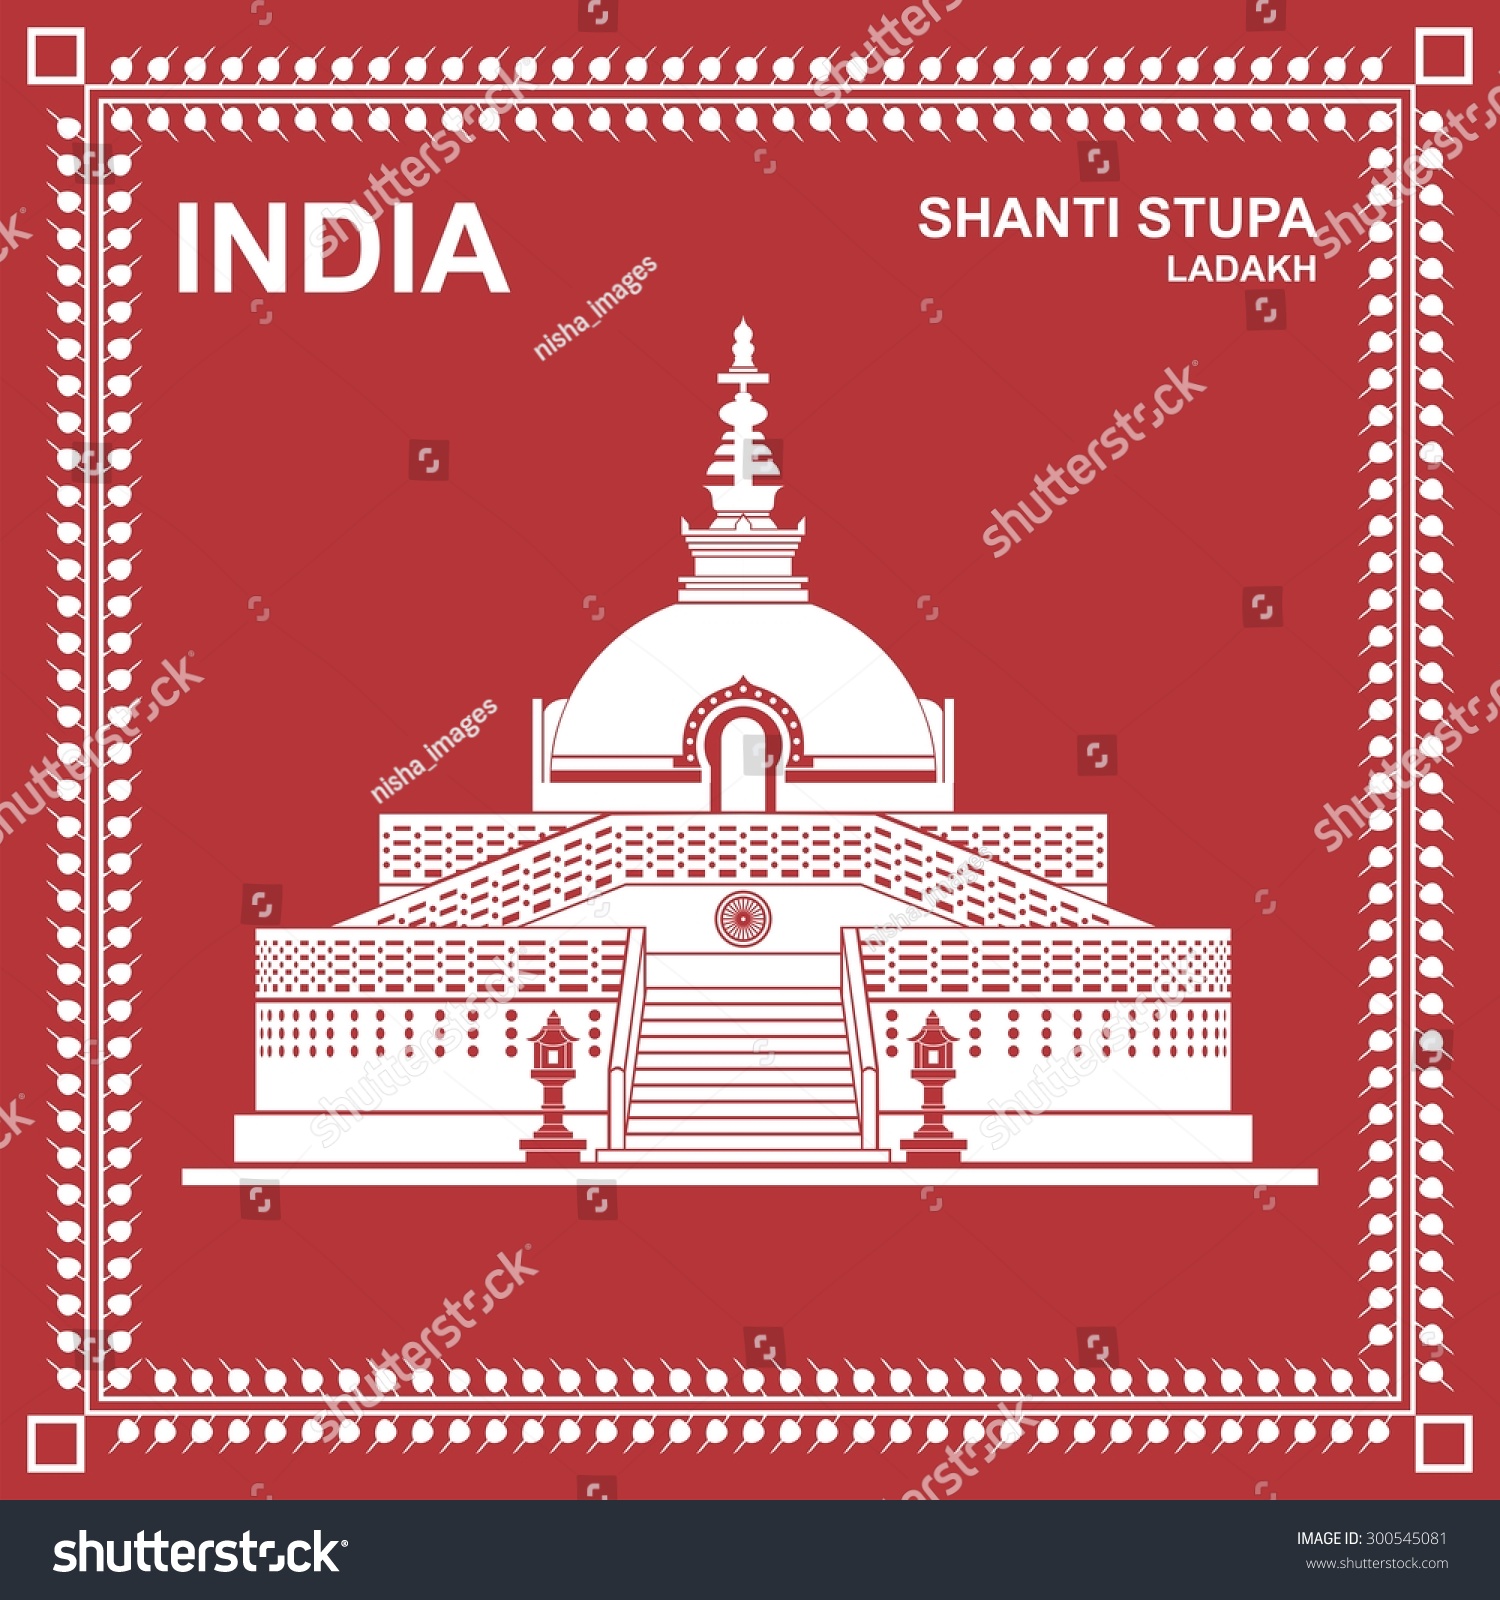 Shanti Stupa Ladakh India Stock Vector (Royalty Free) 300545081 ...